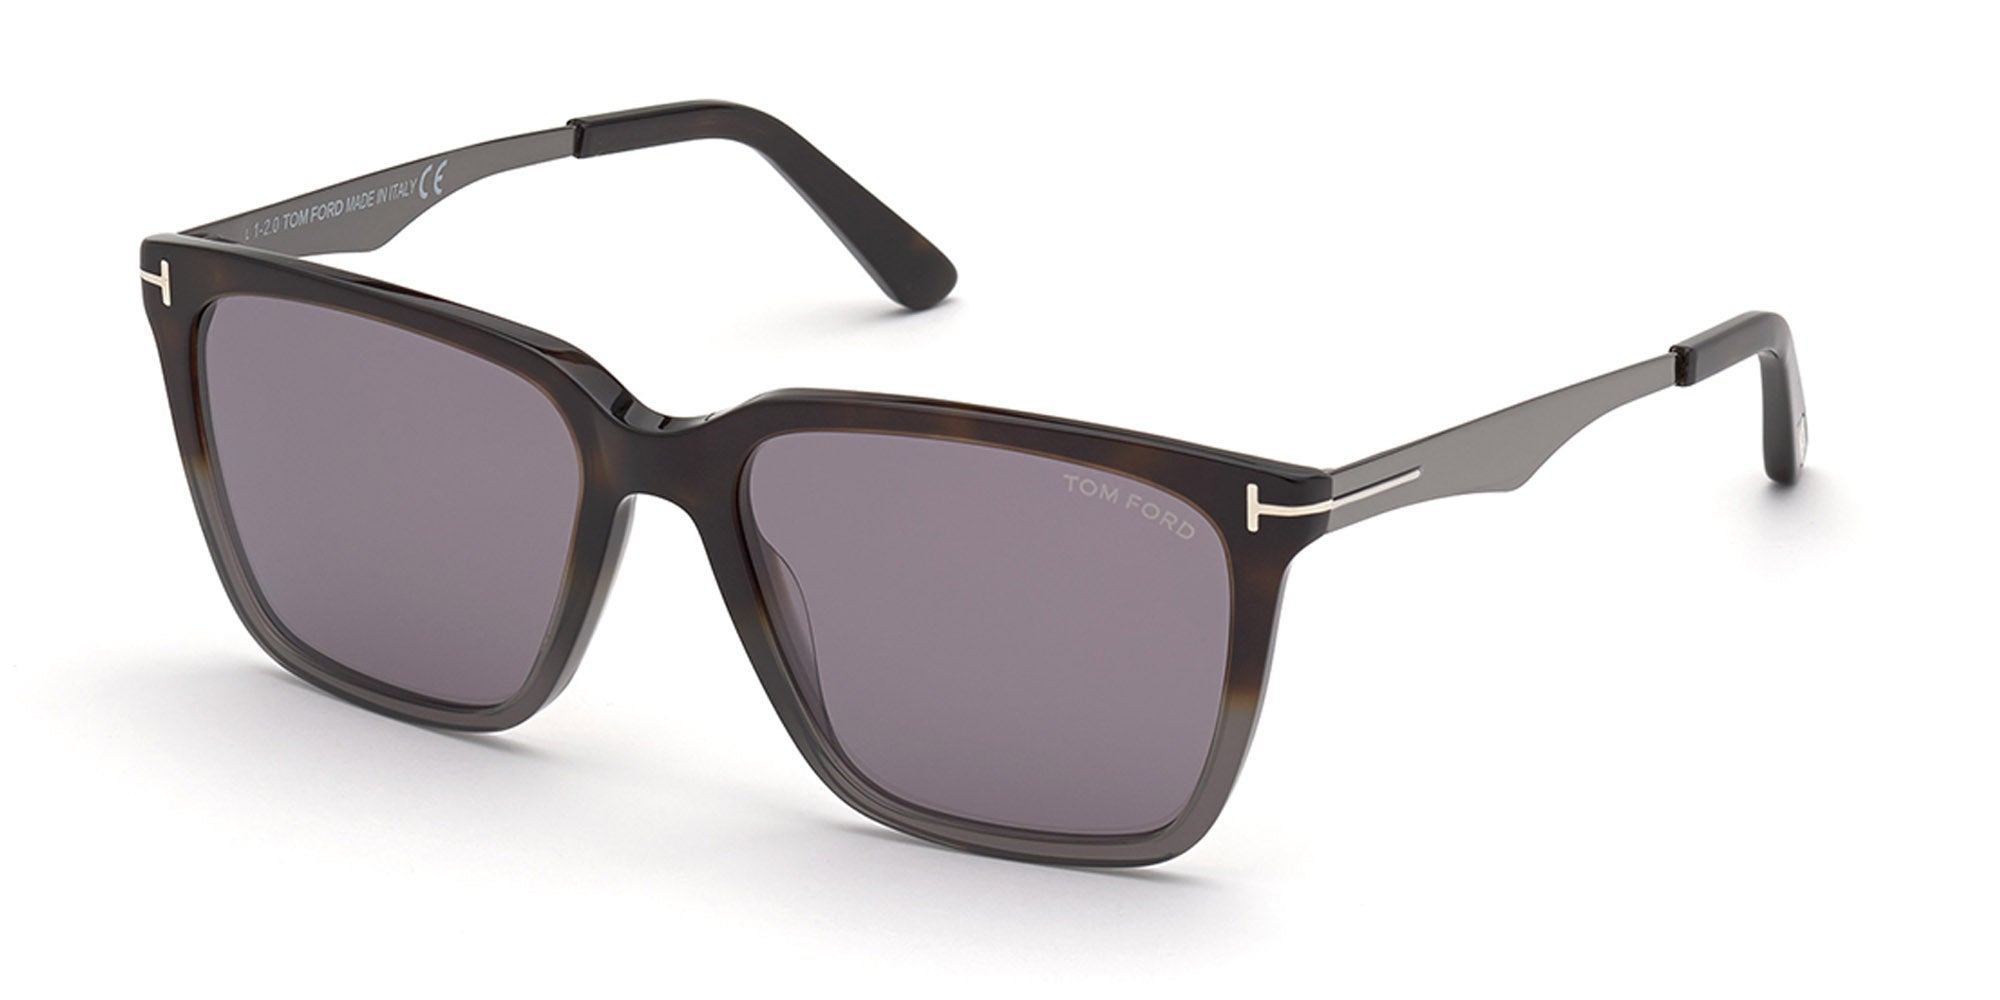 Tom Ford Garrett TF862 Square Sunglasses | Fashion Eyewear US